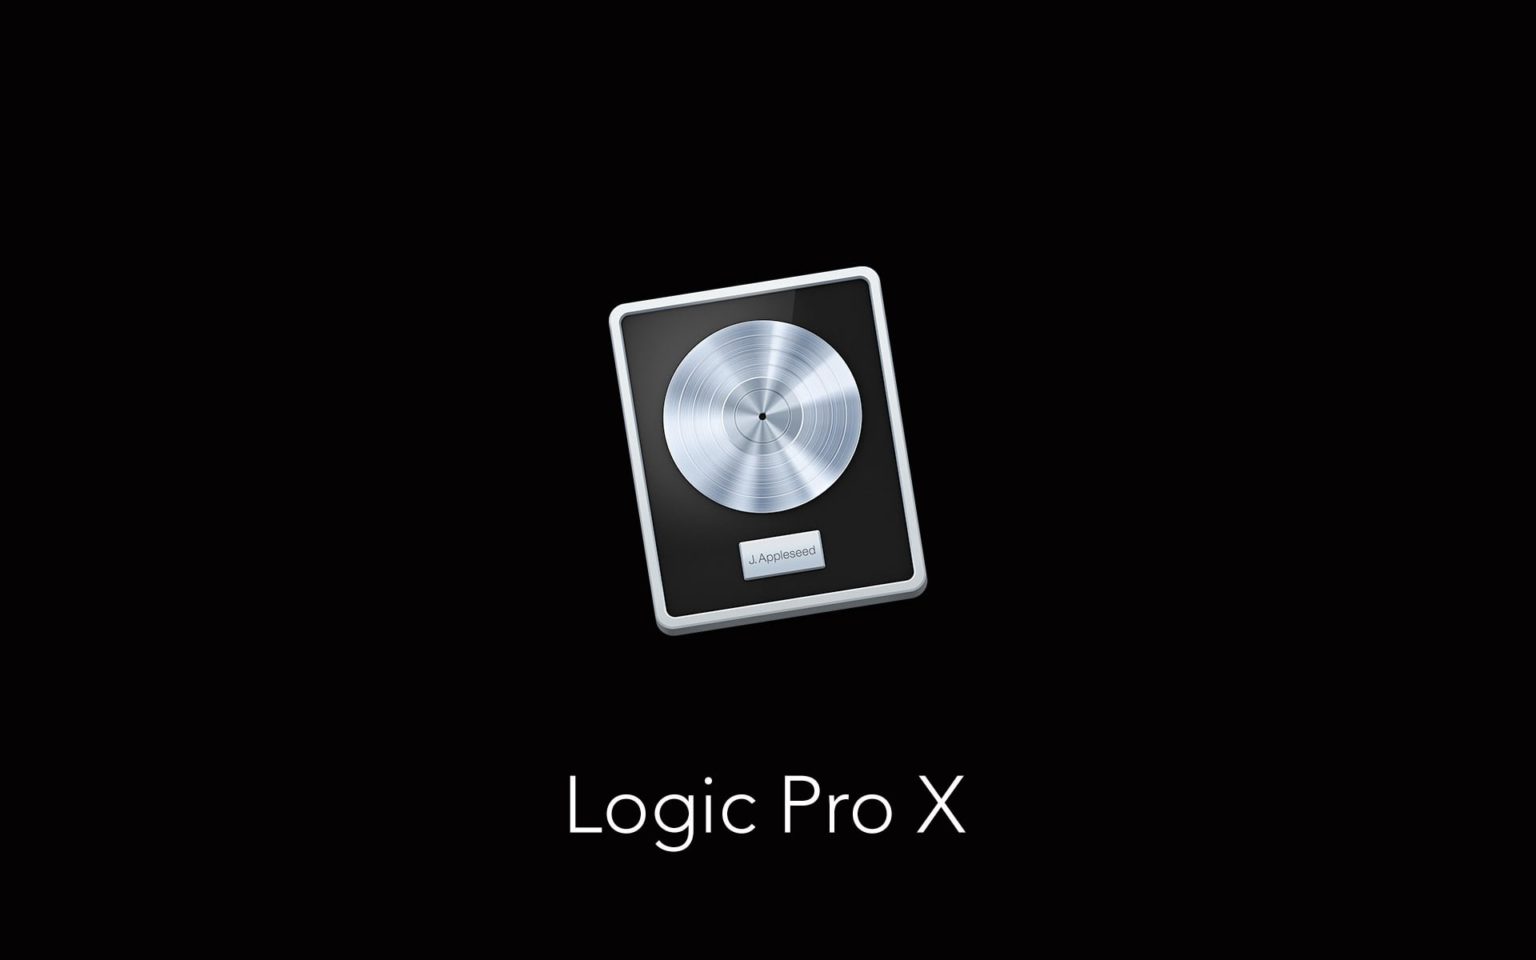 logic pro x 10 free download windows